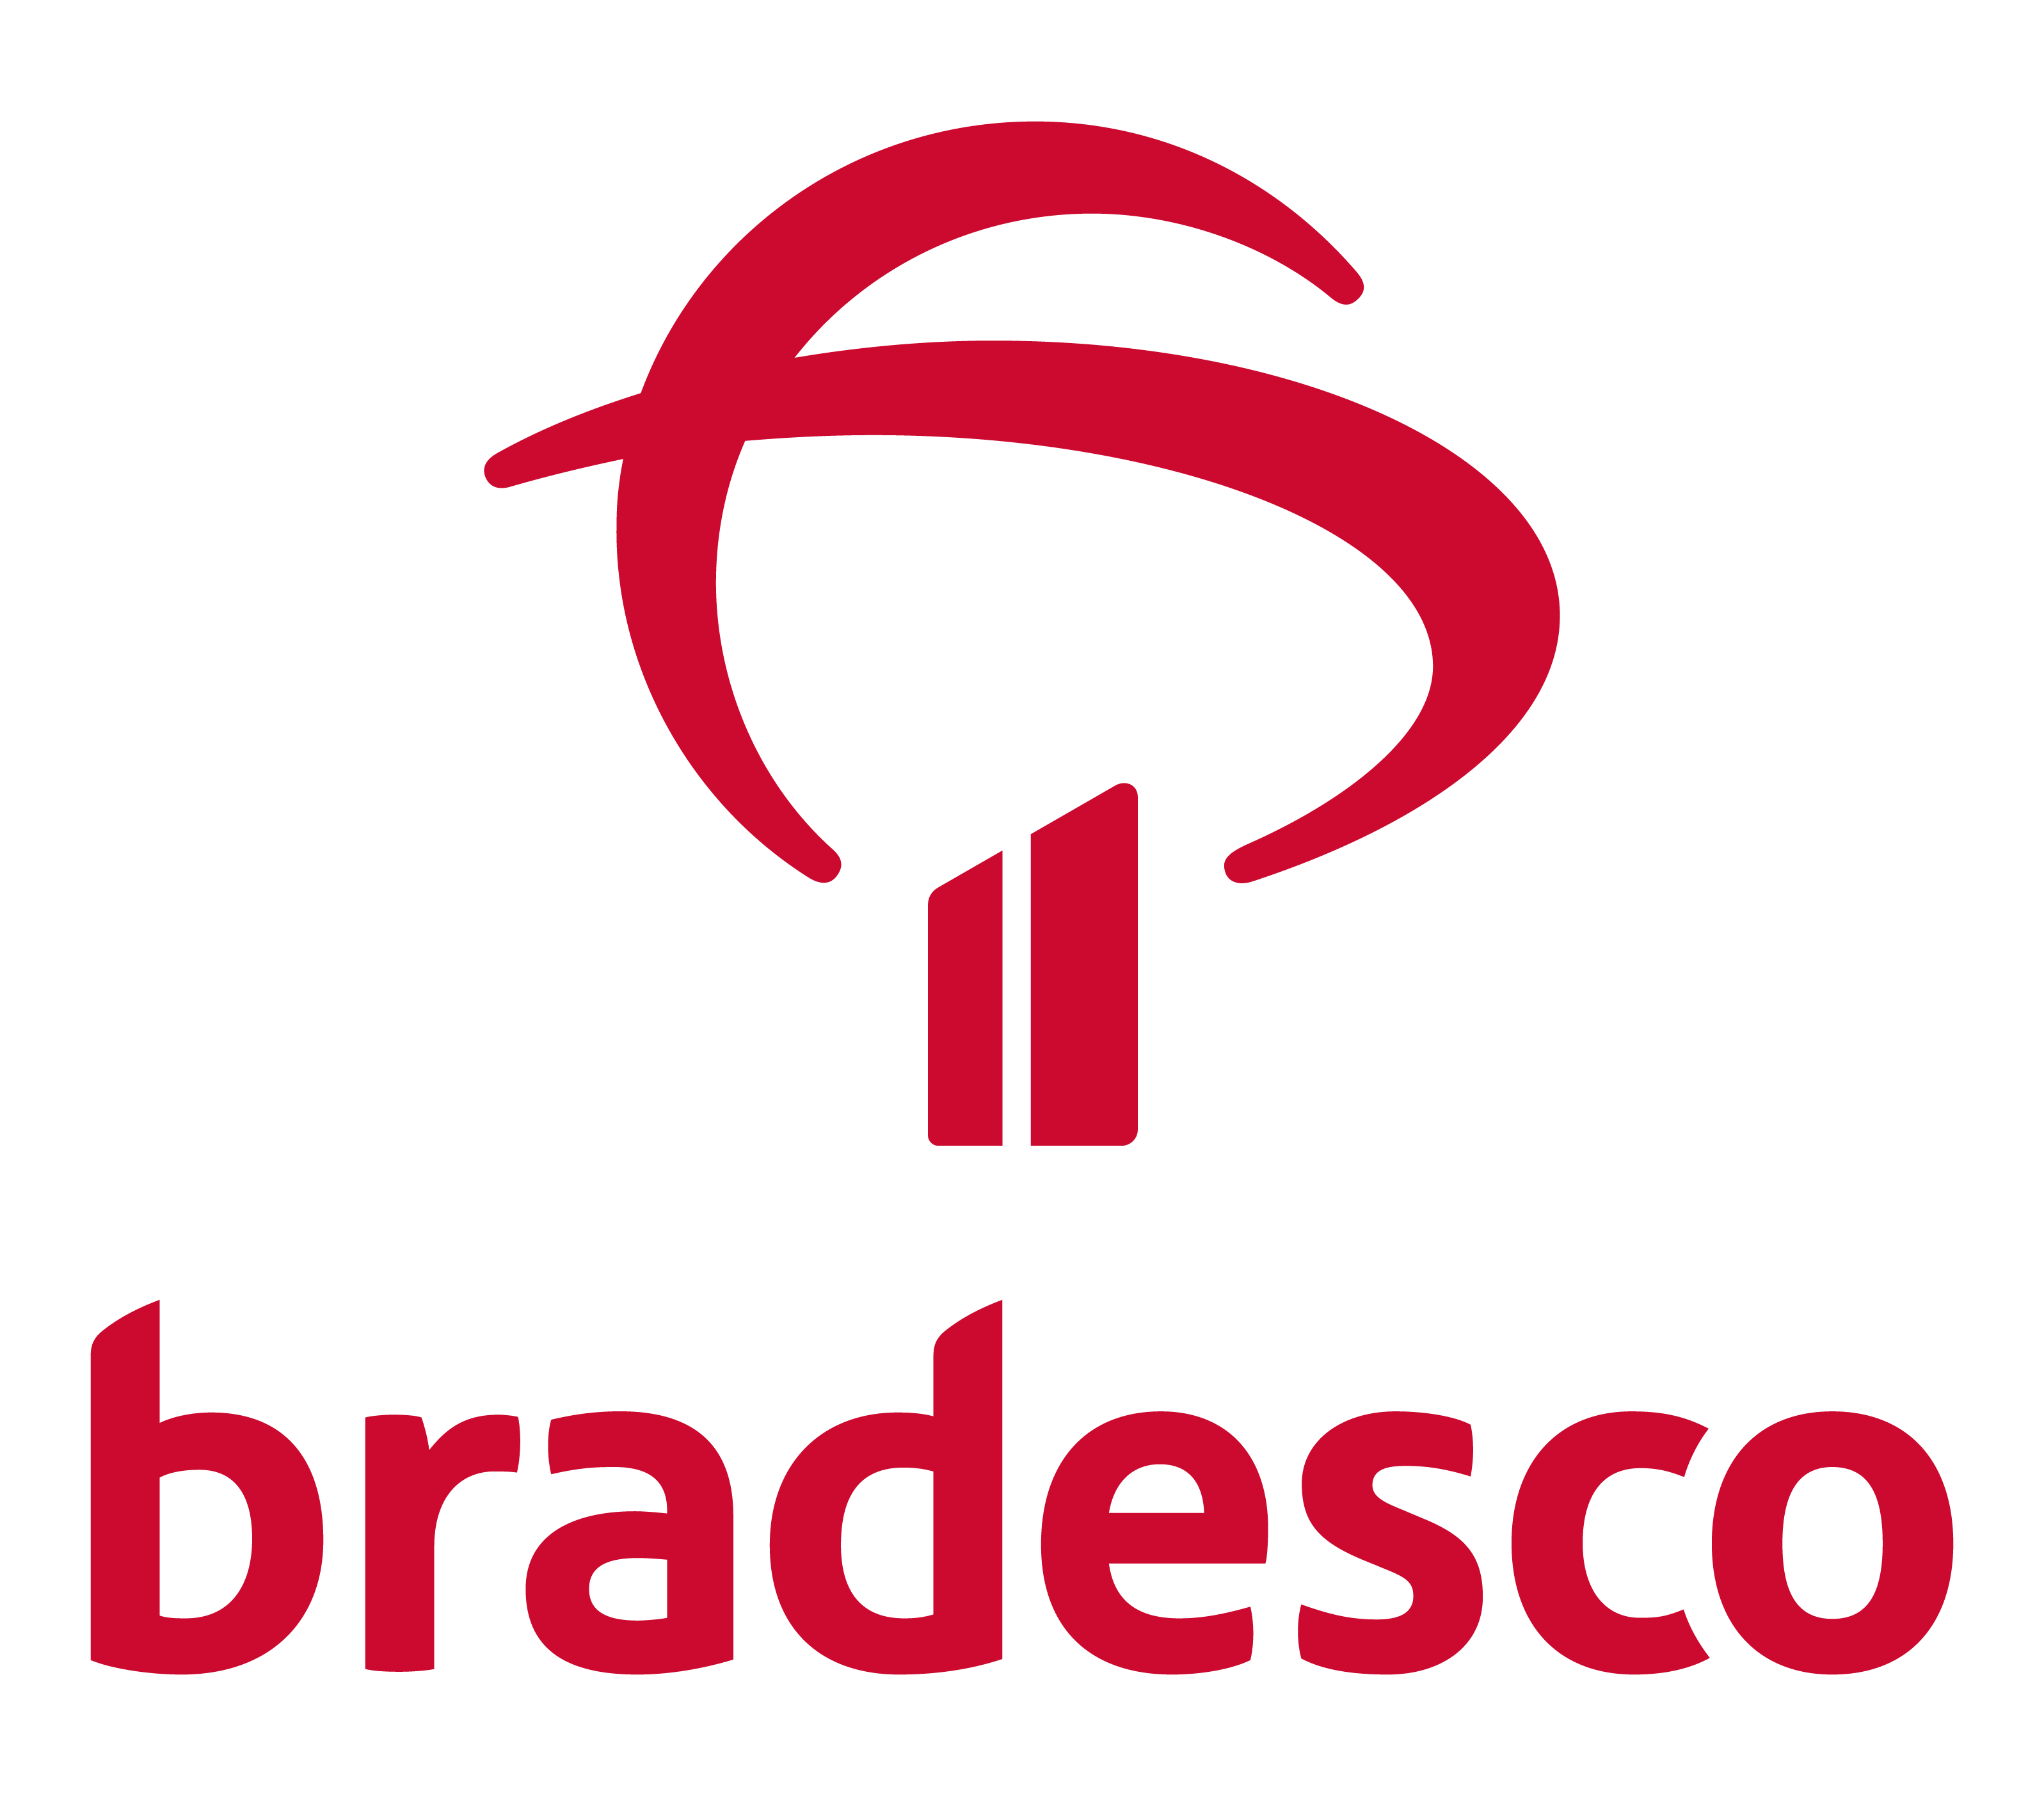 Banco_Bradesco_logo_(vertical)